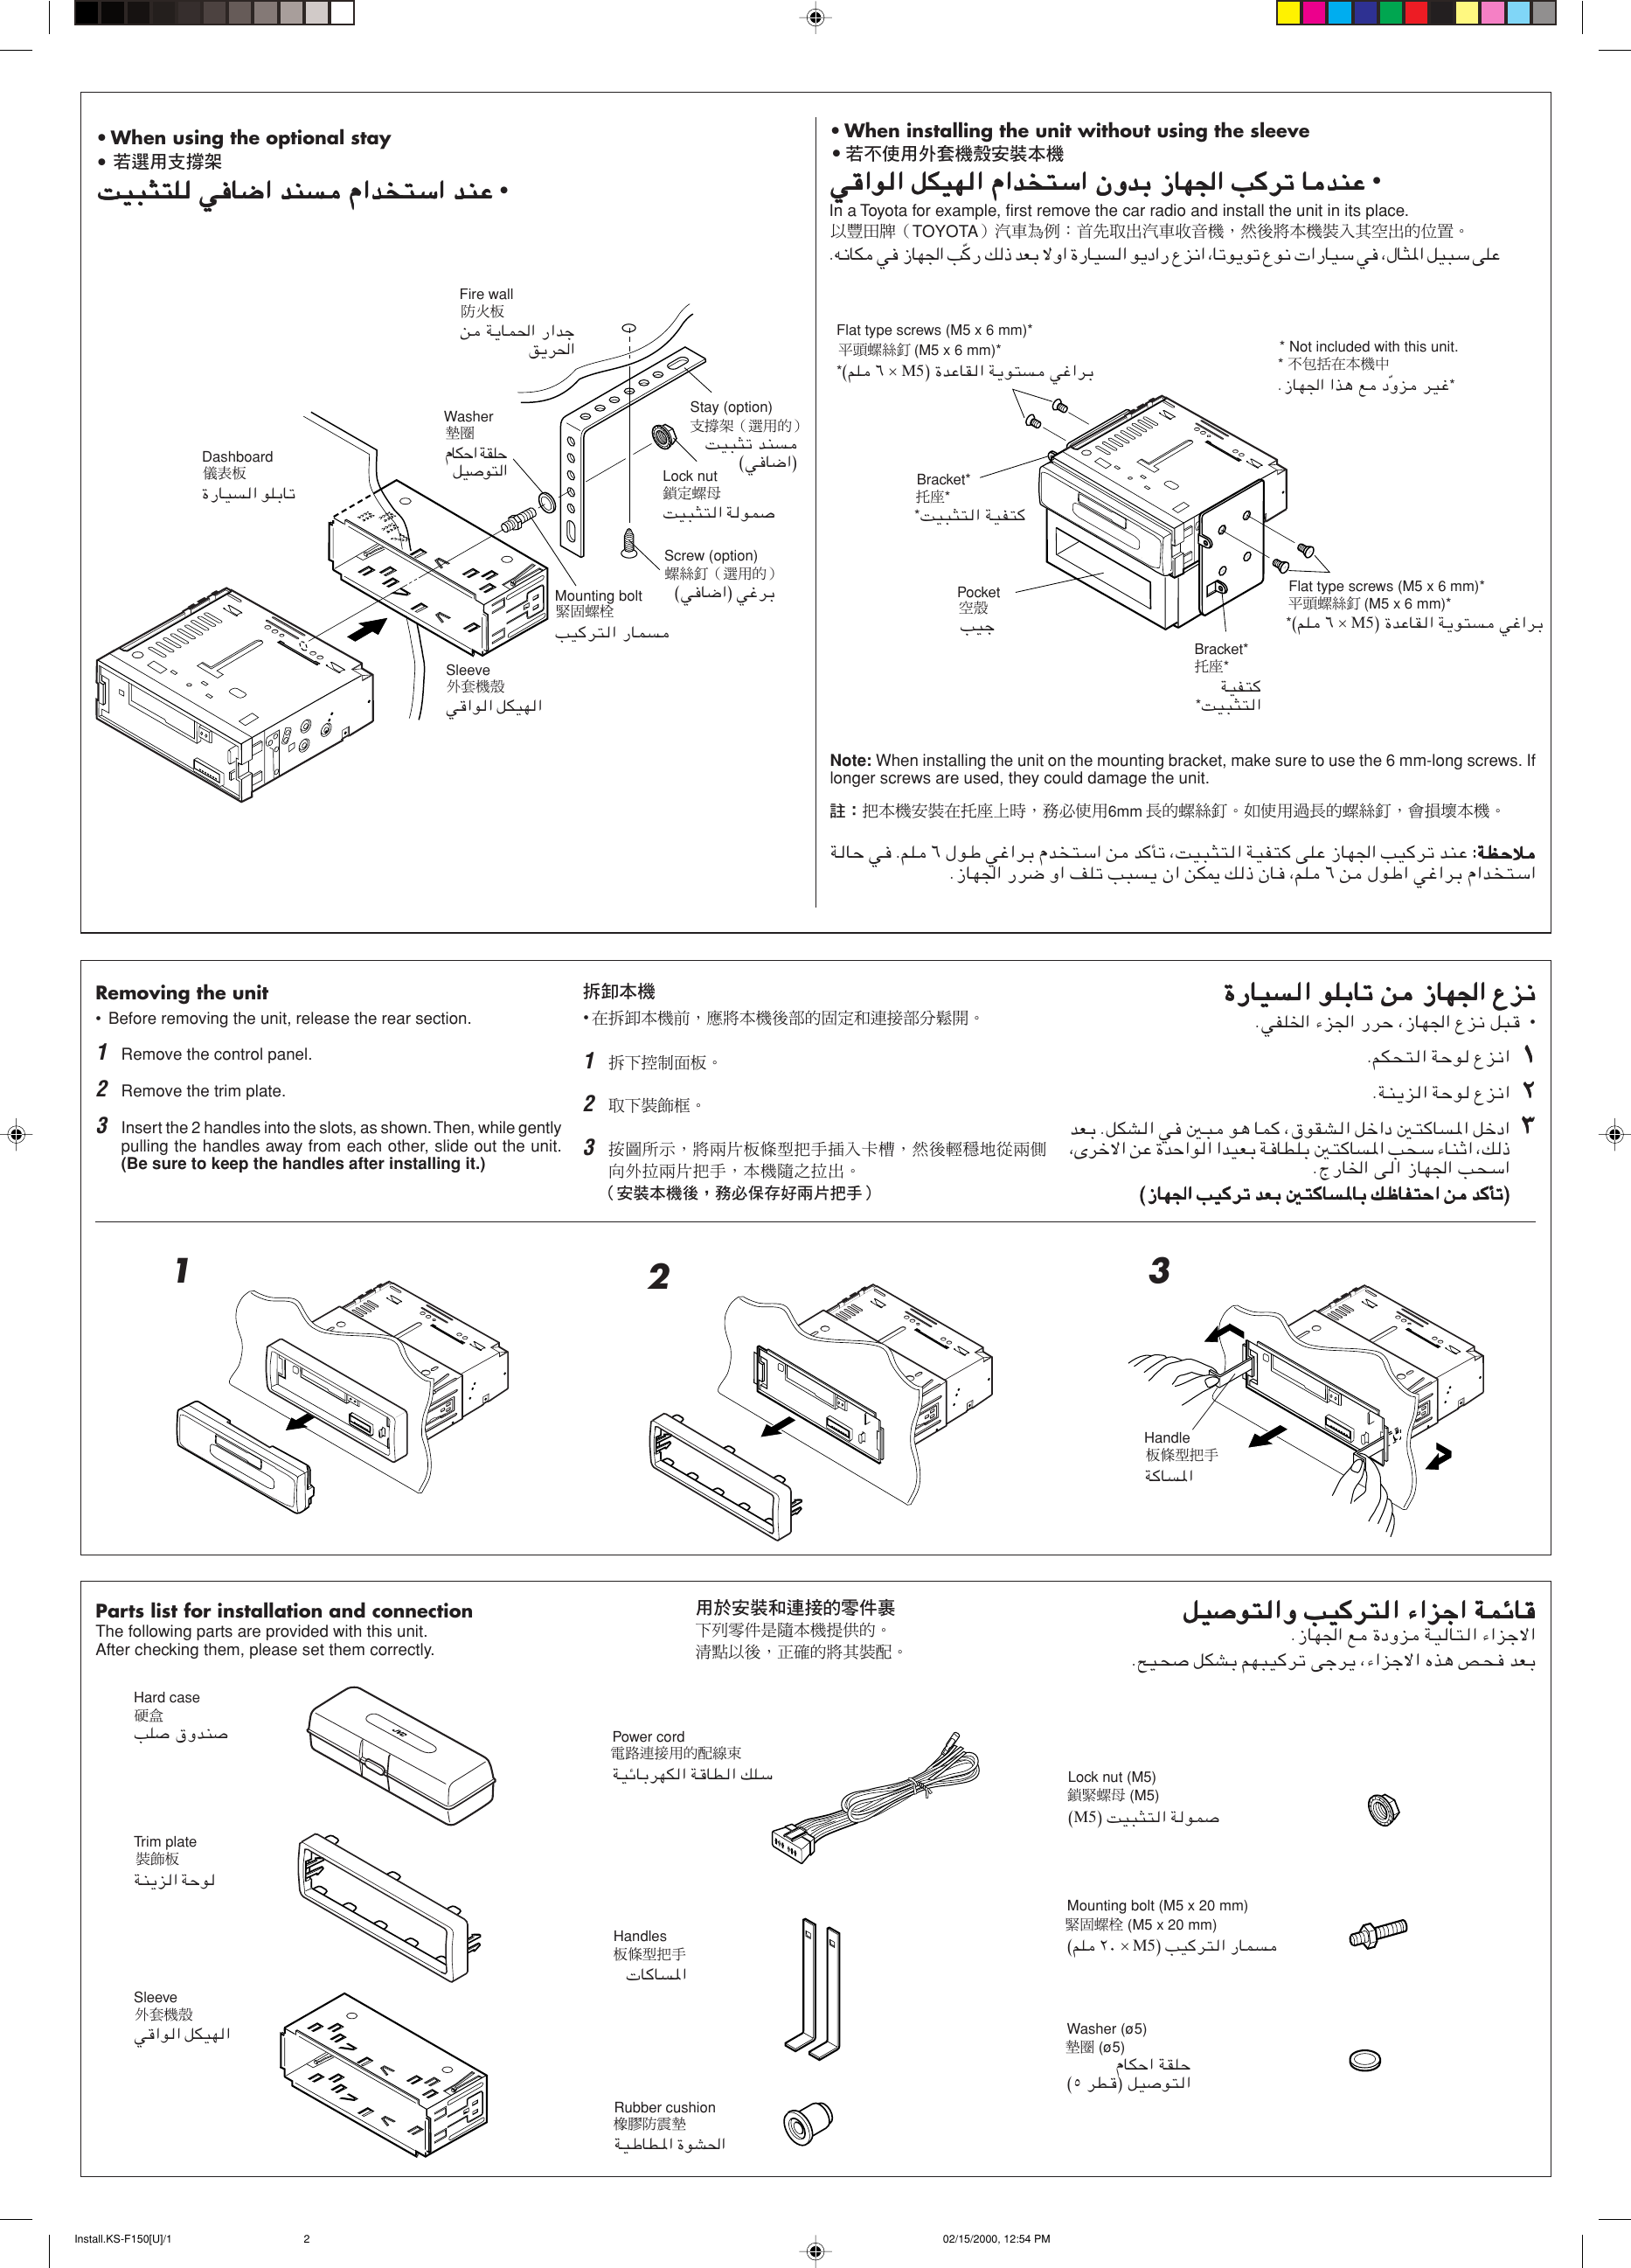 Page 2 of 4 - JVC KS-F150 User Manual FSUN3096-T181